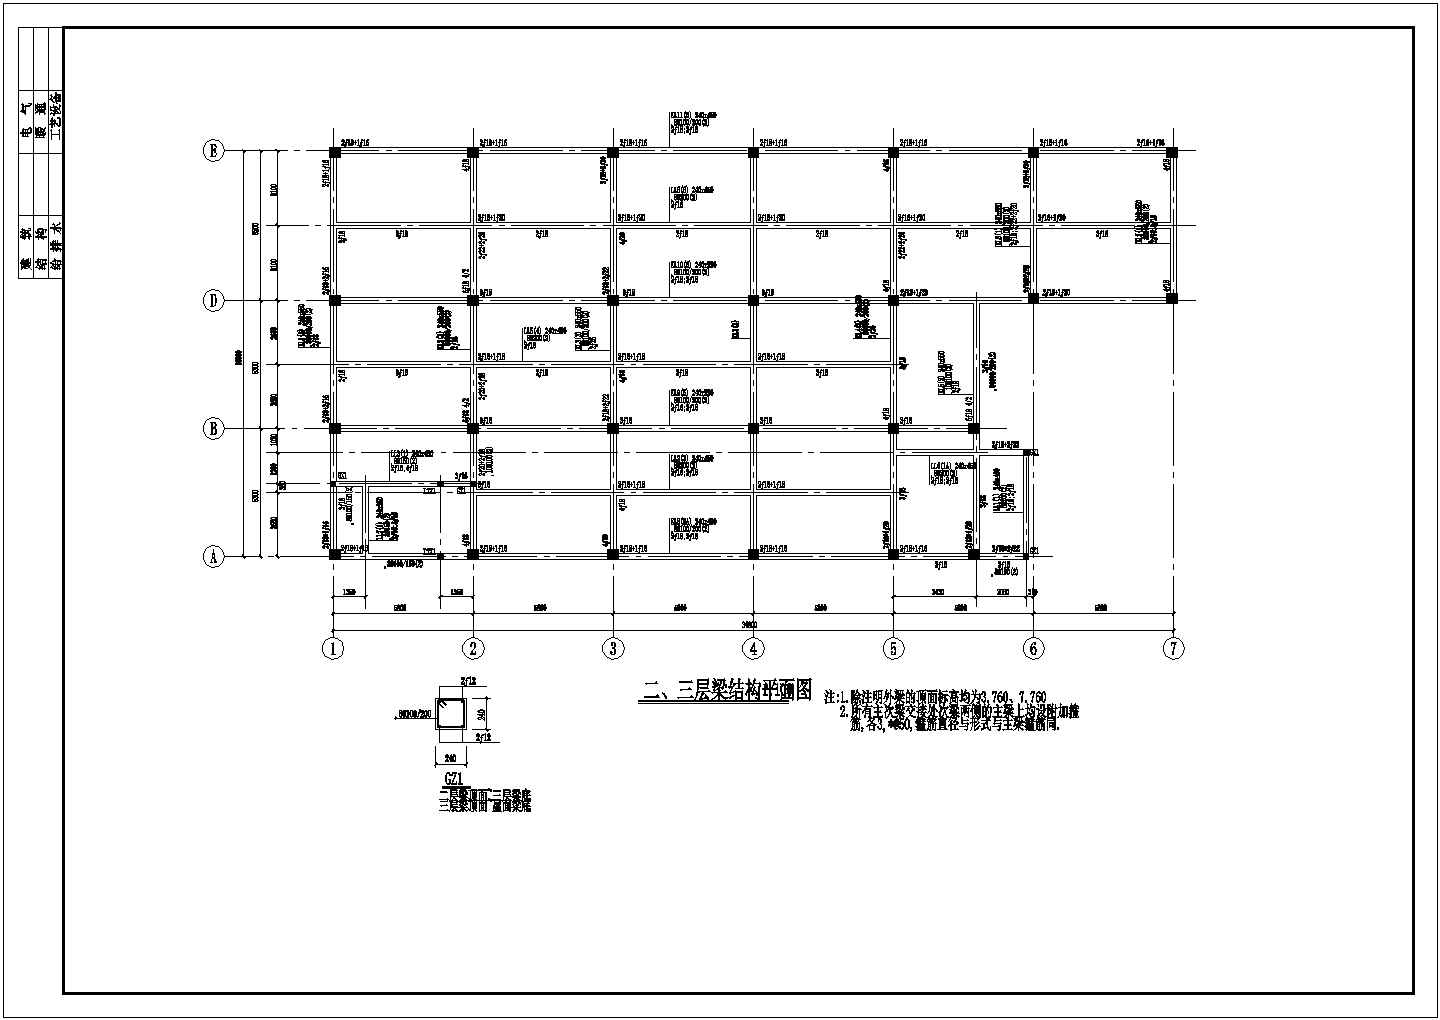 三层综合楼框架结构屋面轻钢设计施工cad平面布置方案图(局部钢混结构)